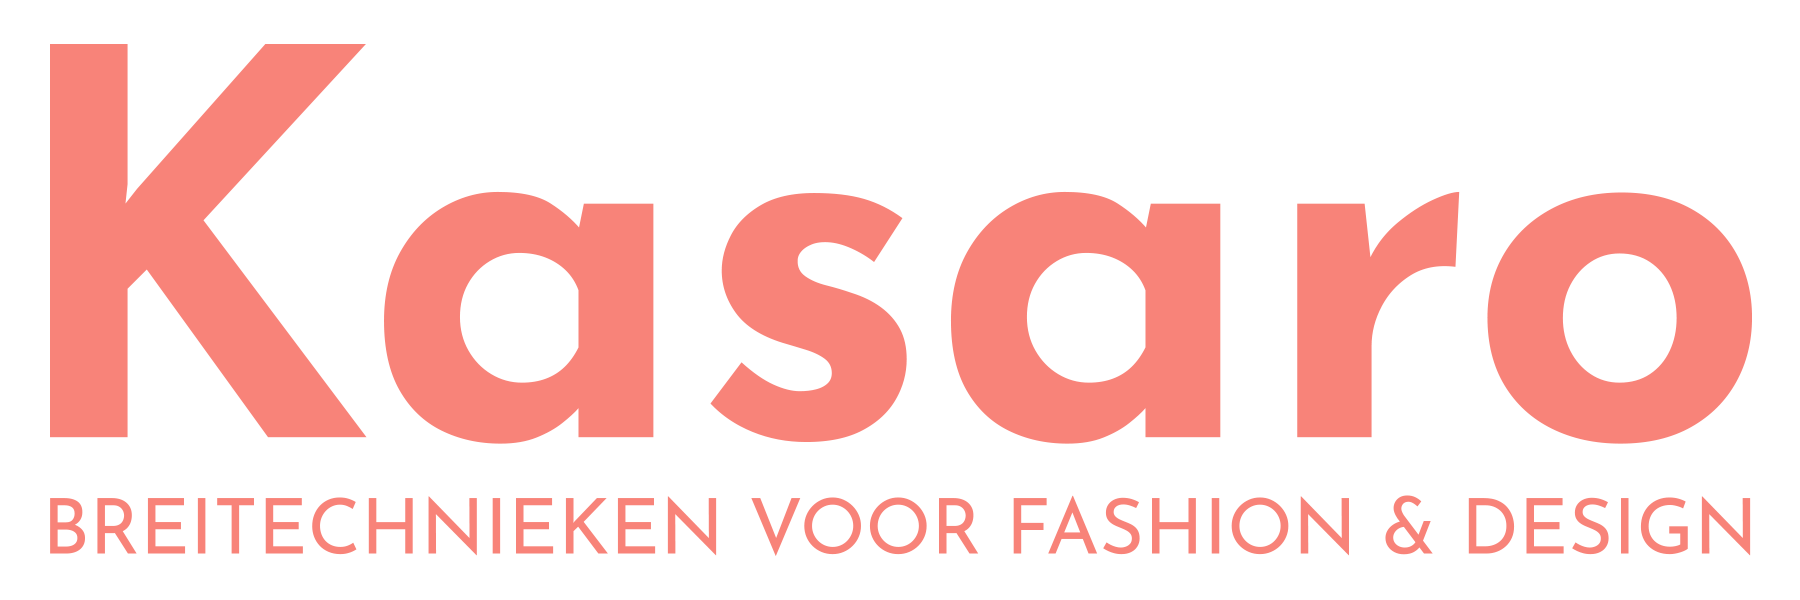 Kasaro logo